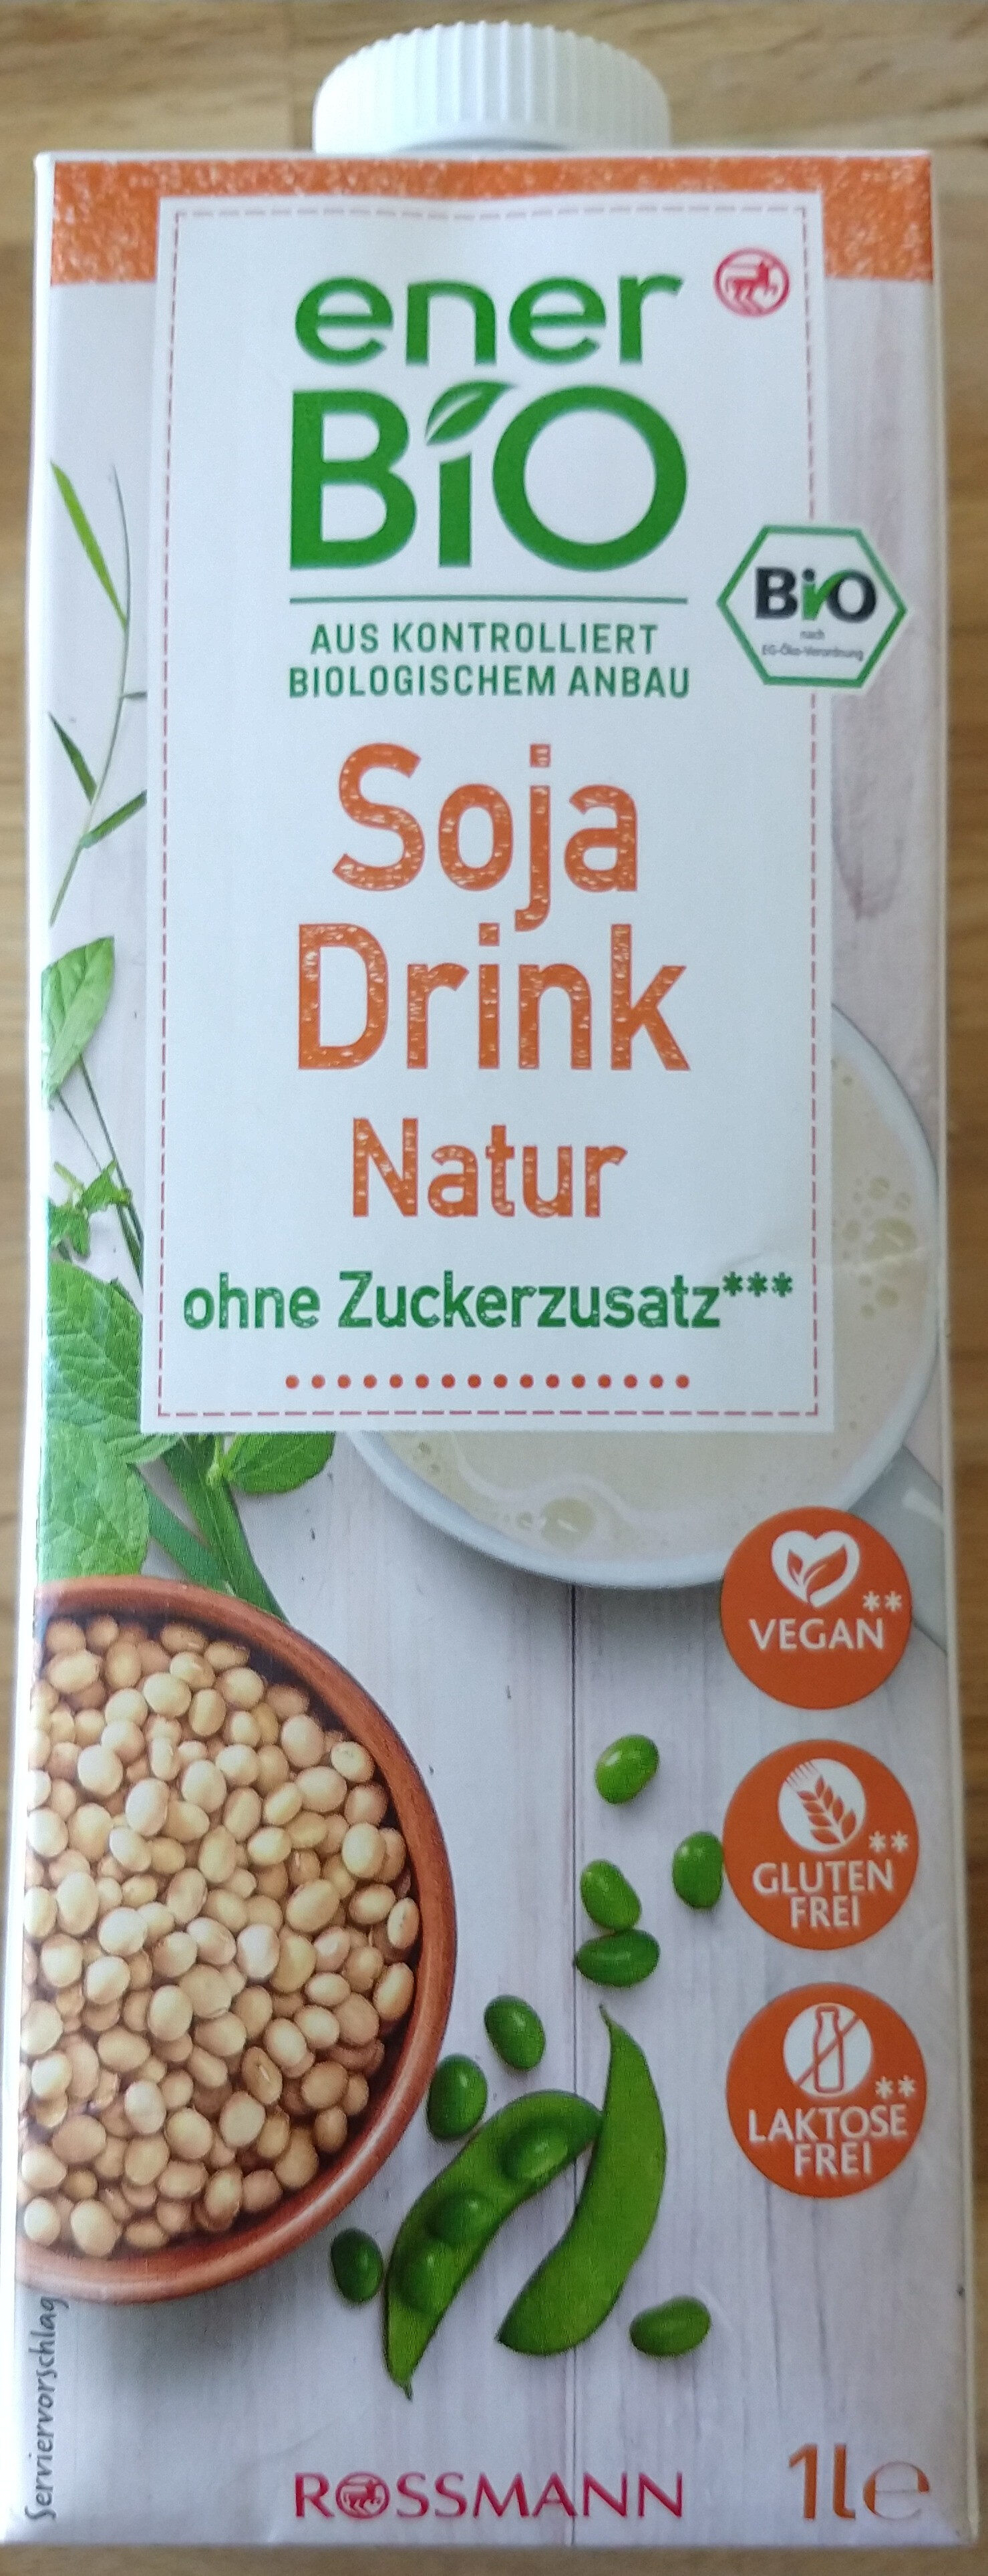 Soja Drink natur - Product - de